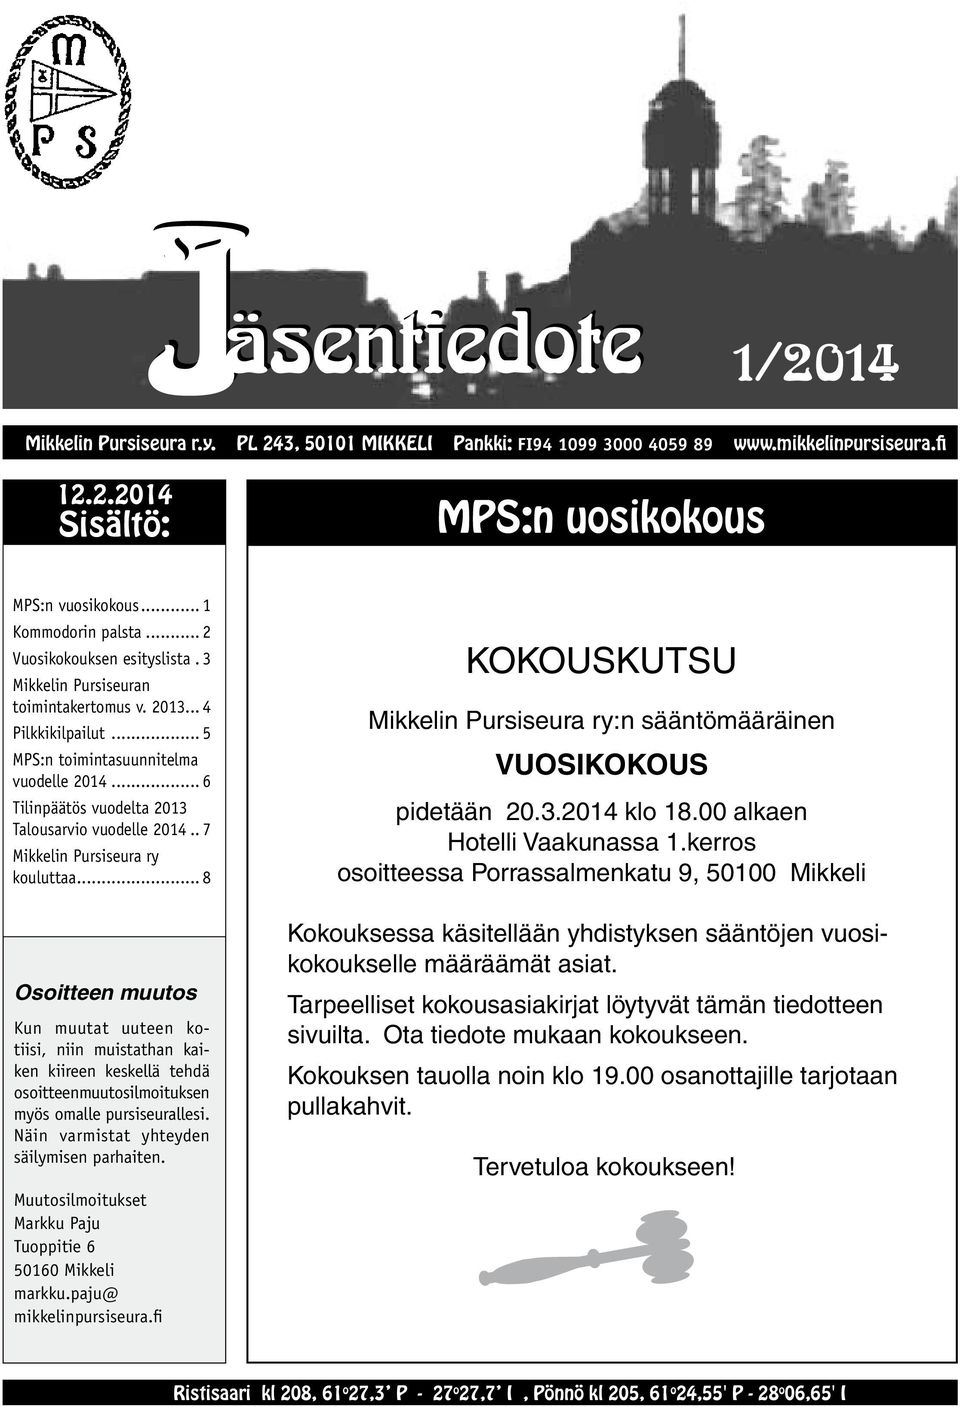 .. 6 Tilinpäätös vuodelta 2013 Talousarvio vuodelle 2014... 7 Mikkelin Pursiseura ry kouluttaa... 8 KOKOUSKUTSU Mikkelin Pursiseura ry:n sääntömääräinen VUOSIKOKOUS pidetään 20.3.2014 klo 18.